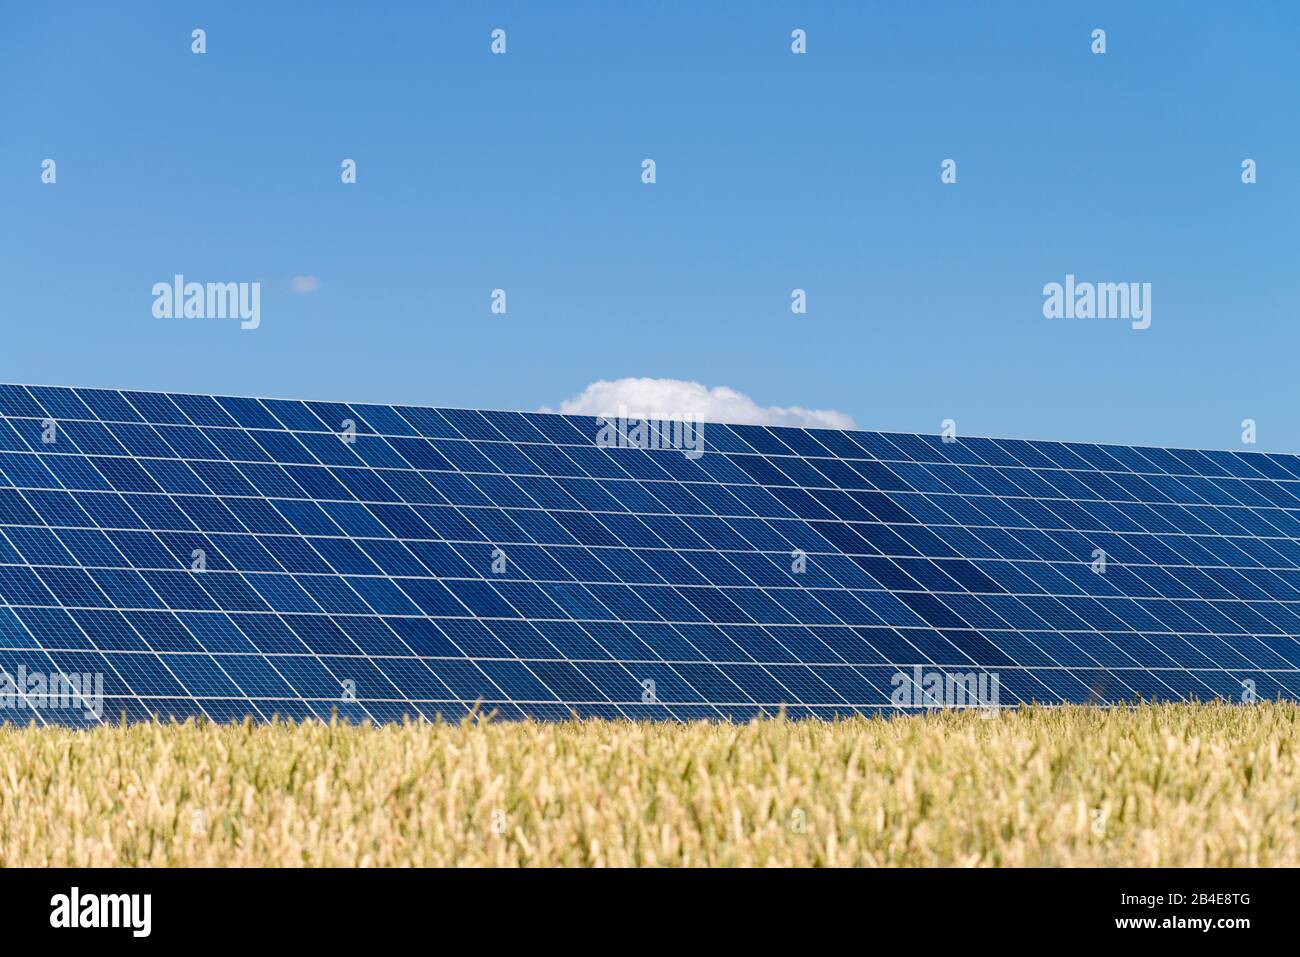 Solaranlagen im Kornfeld unter blauem Himmel Foto Stock